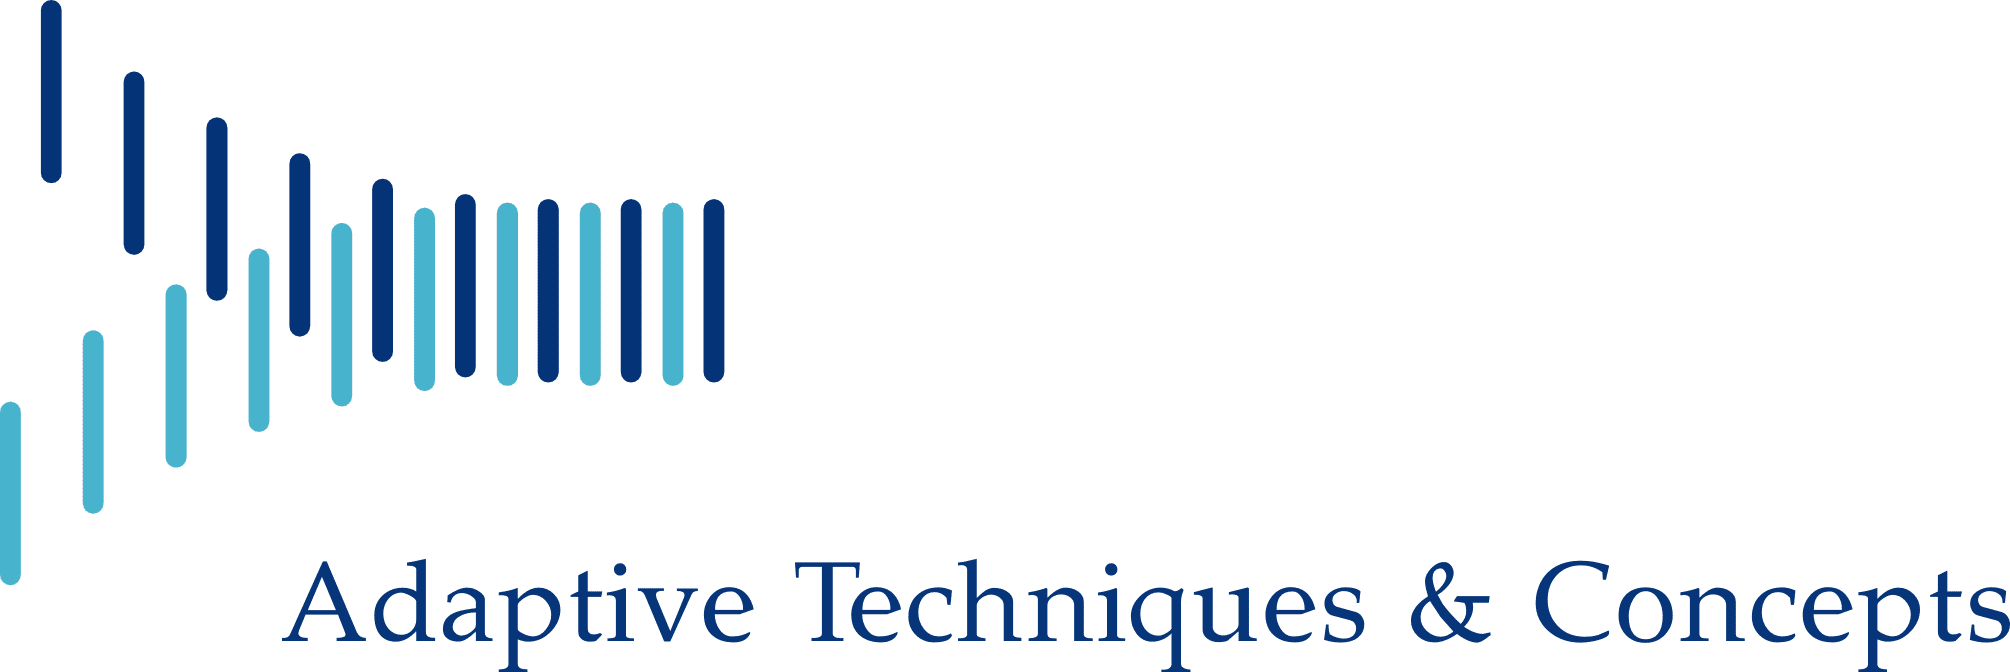 Adaptive Techniques & Concepts LLC